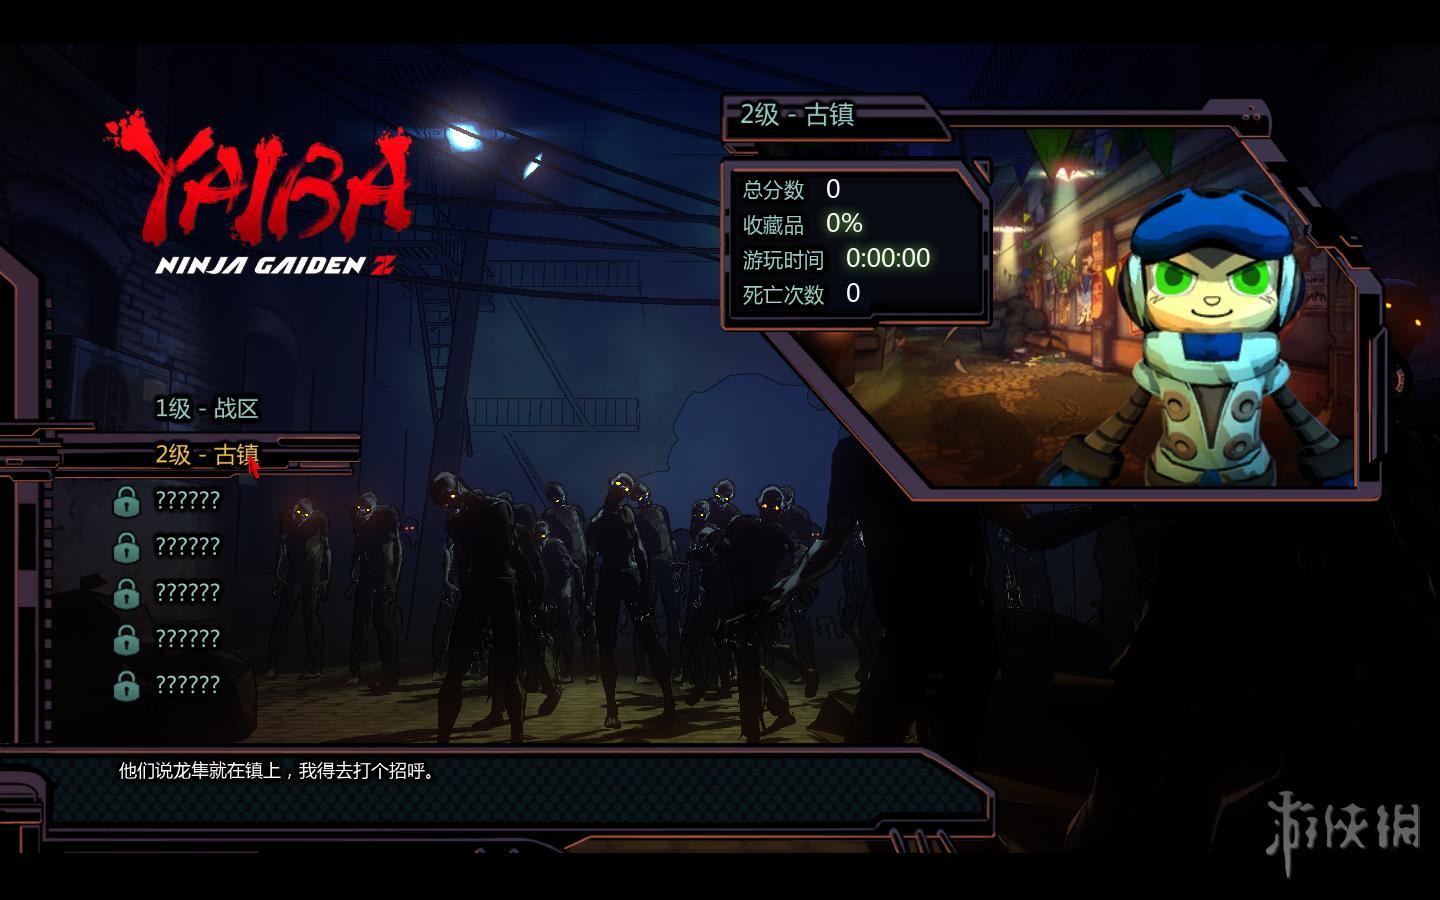 ´棺ZYaiba: Ninja Gaiden Zv1.0޸LinGon[Steam]